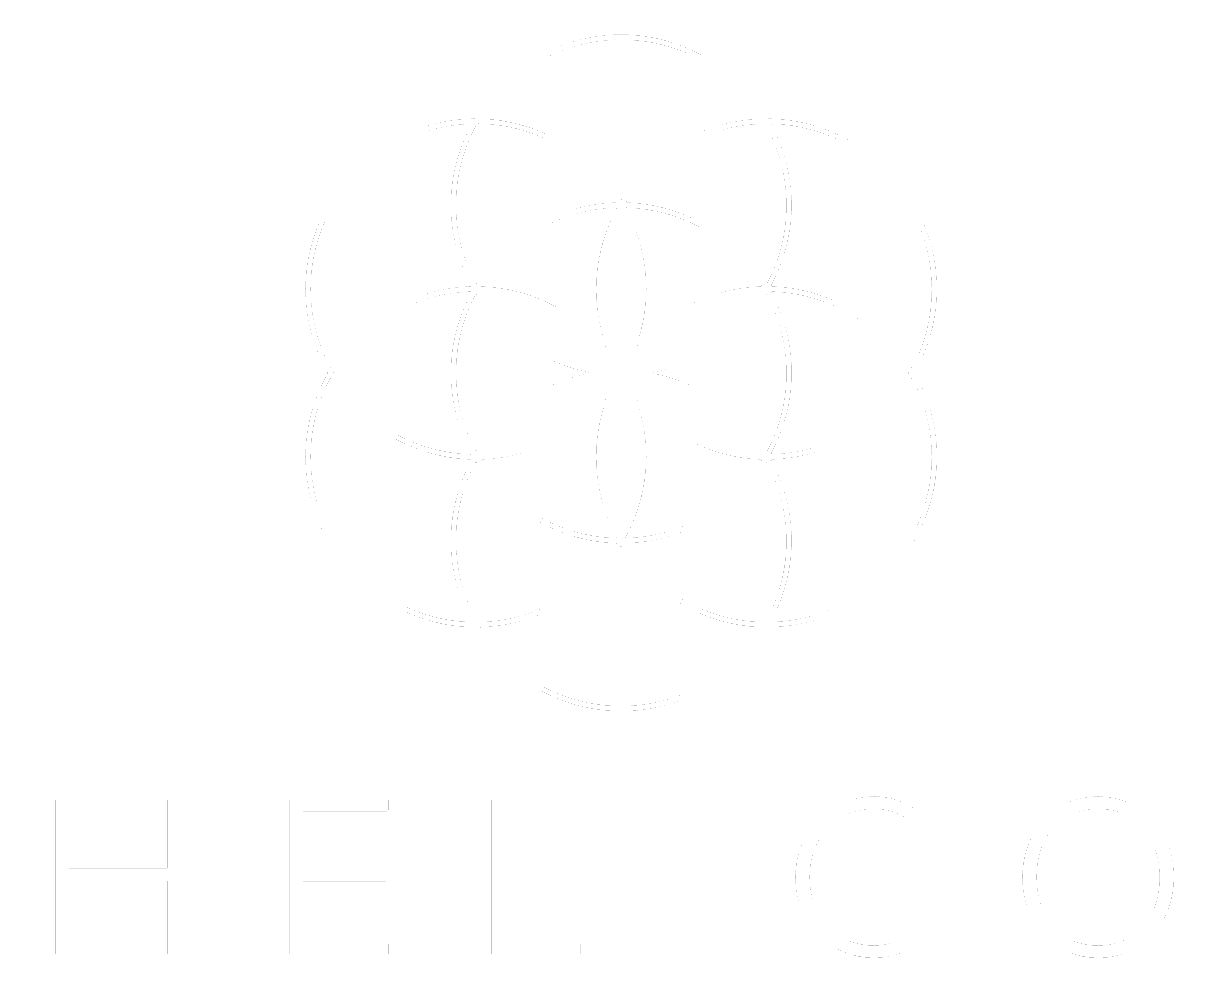 Helico